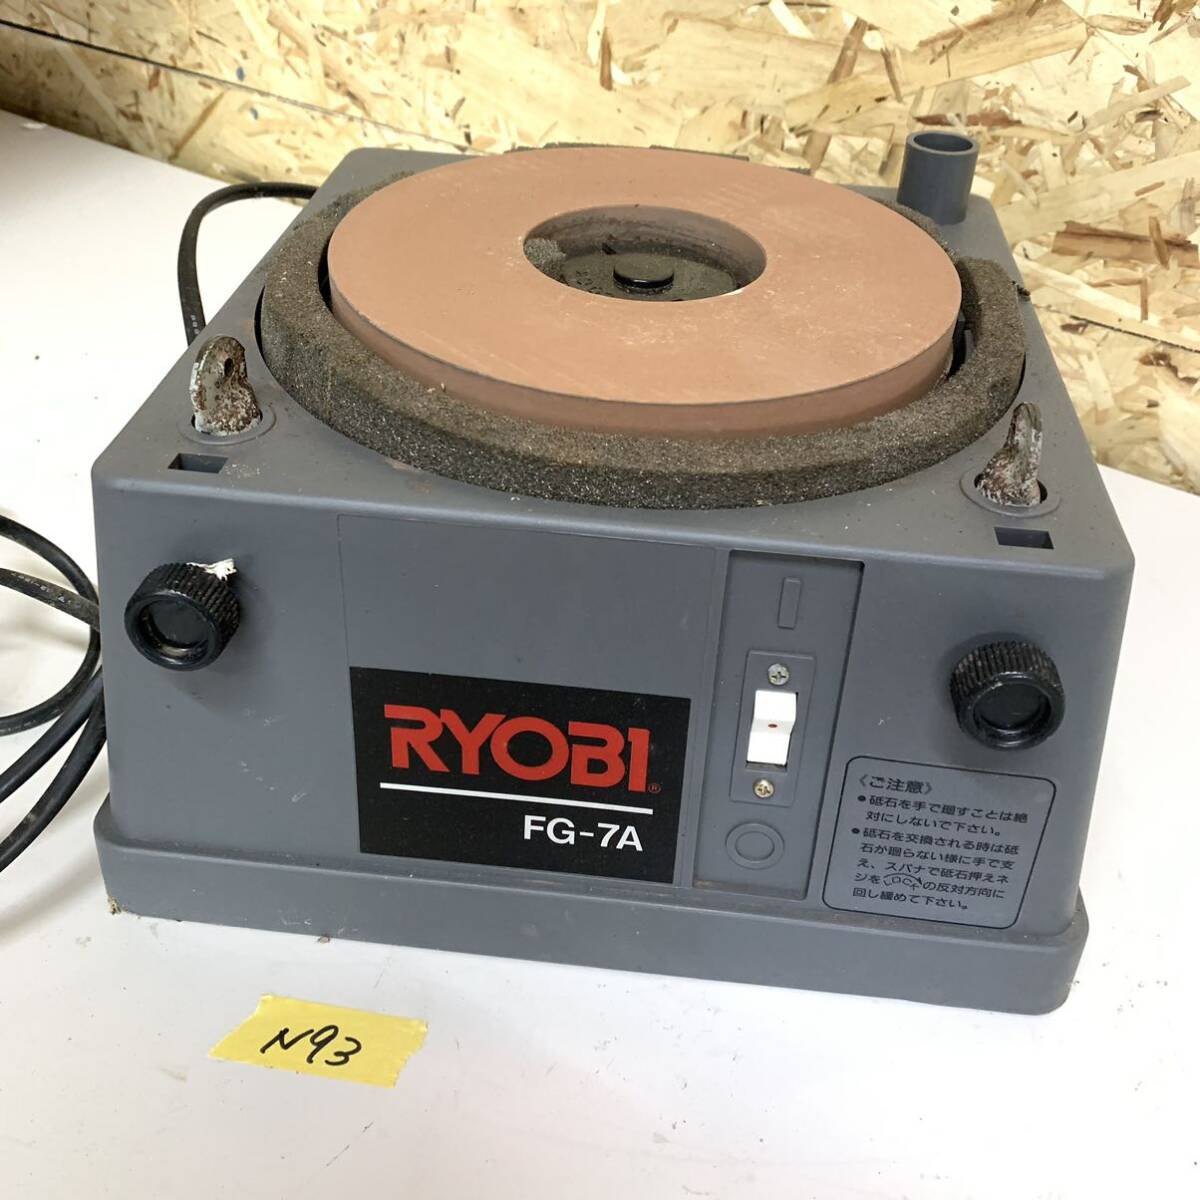  grinder RYOBI Ryobi FG-7A cutlery grinder power tool N93